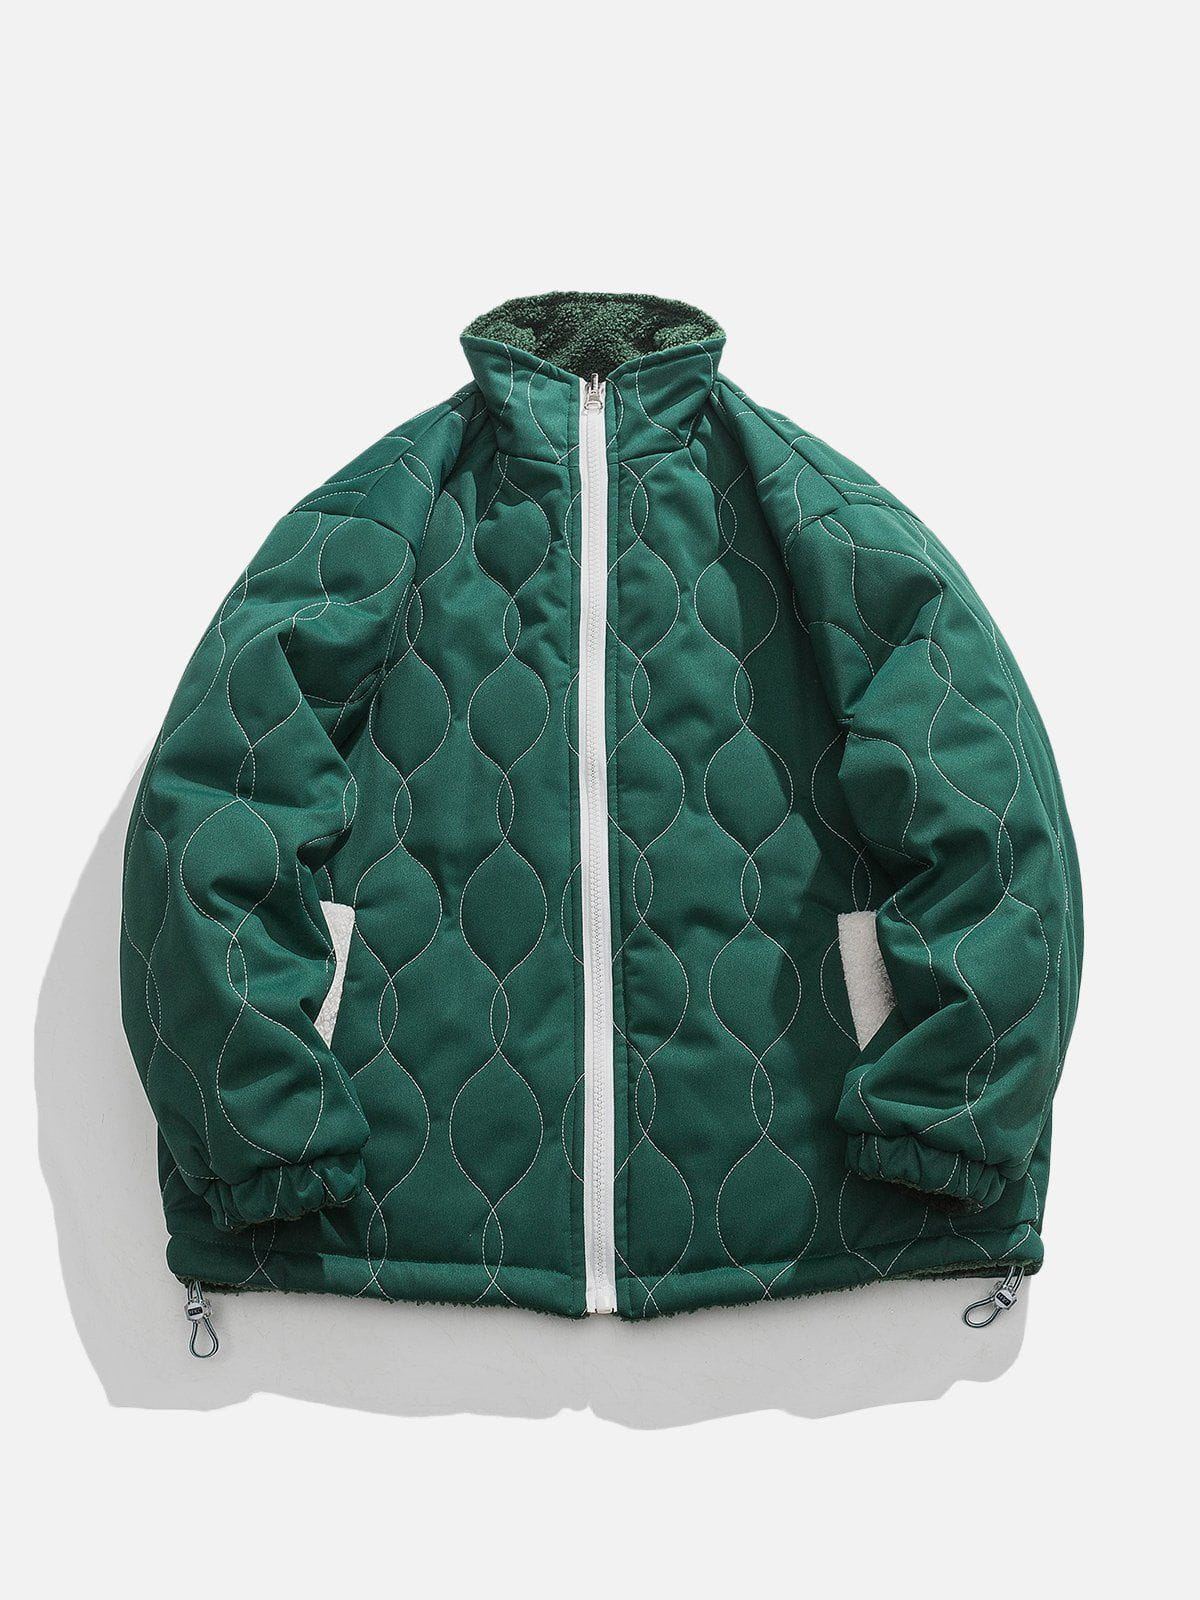 Sneakerland™ - Stars Reversible Sherpa coat